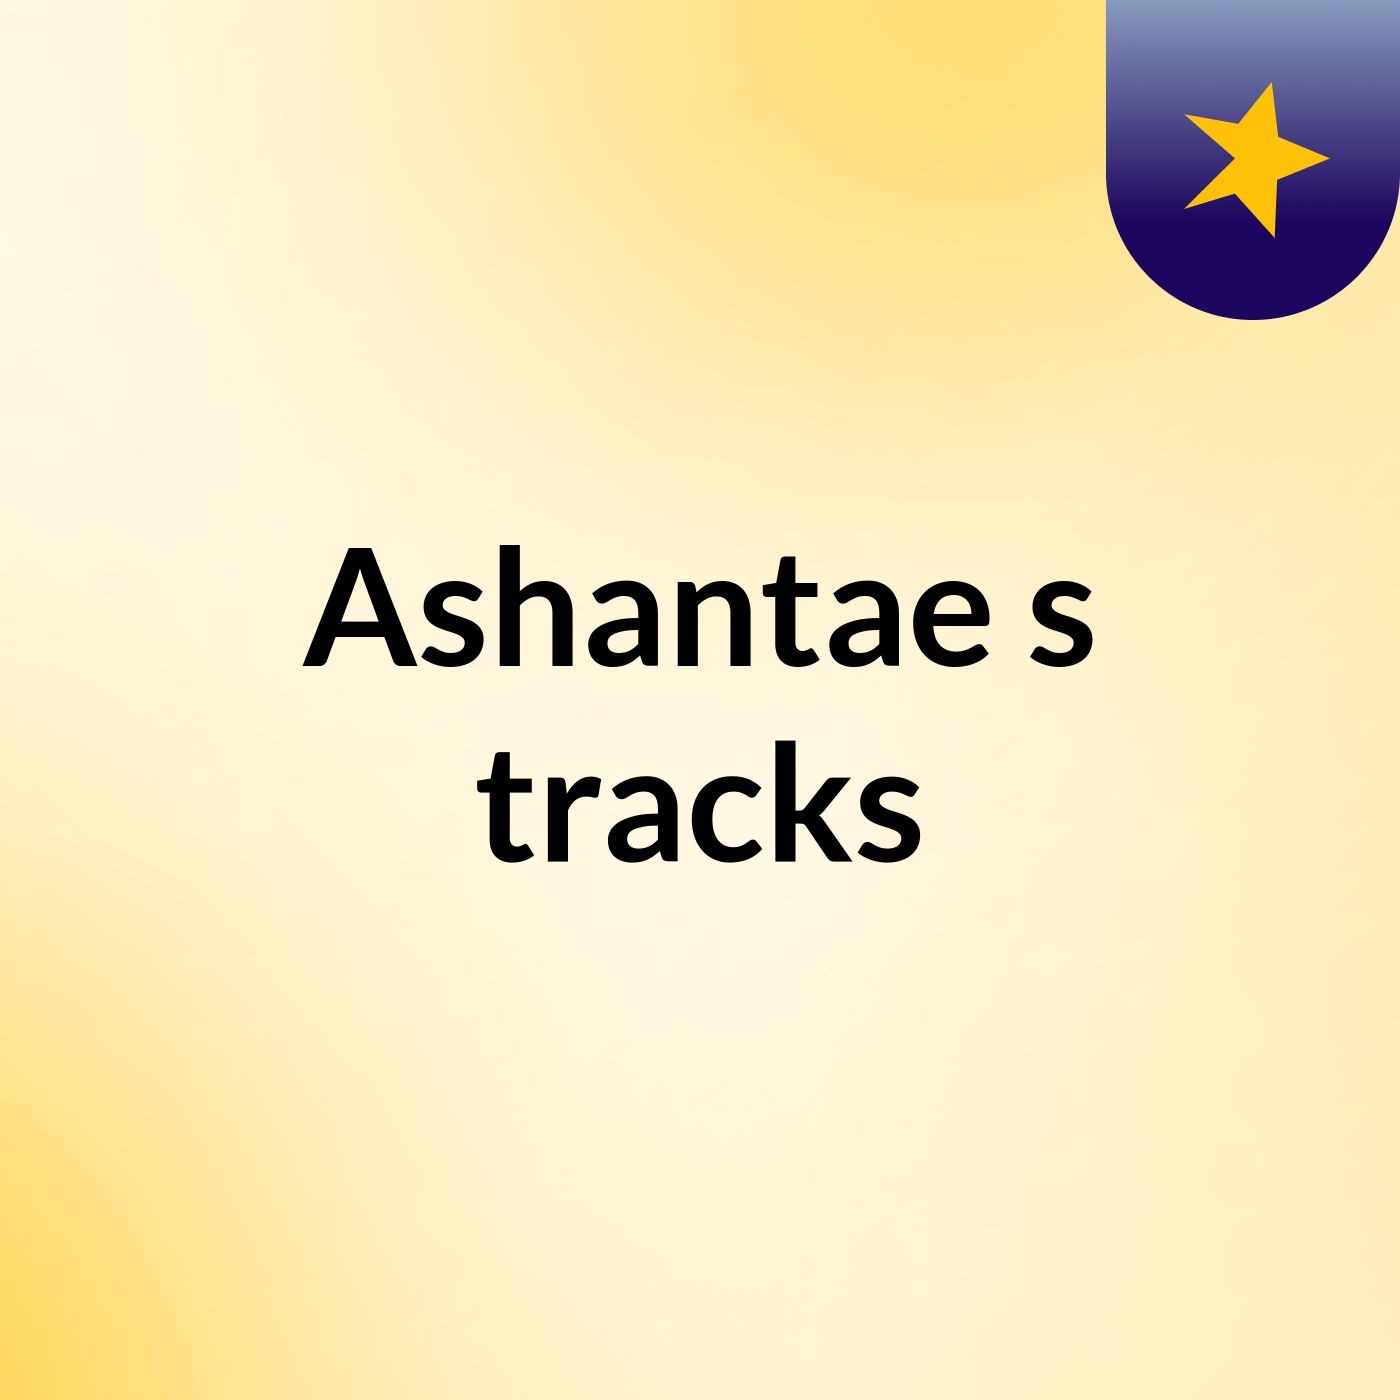 Ashantae's tracks